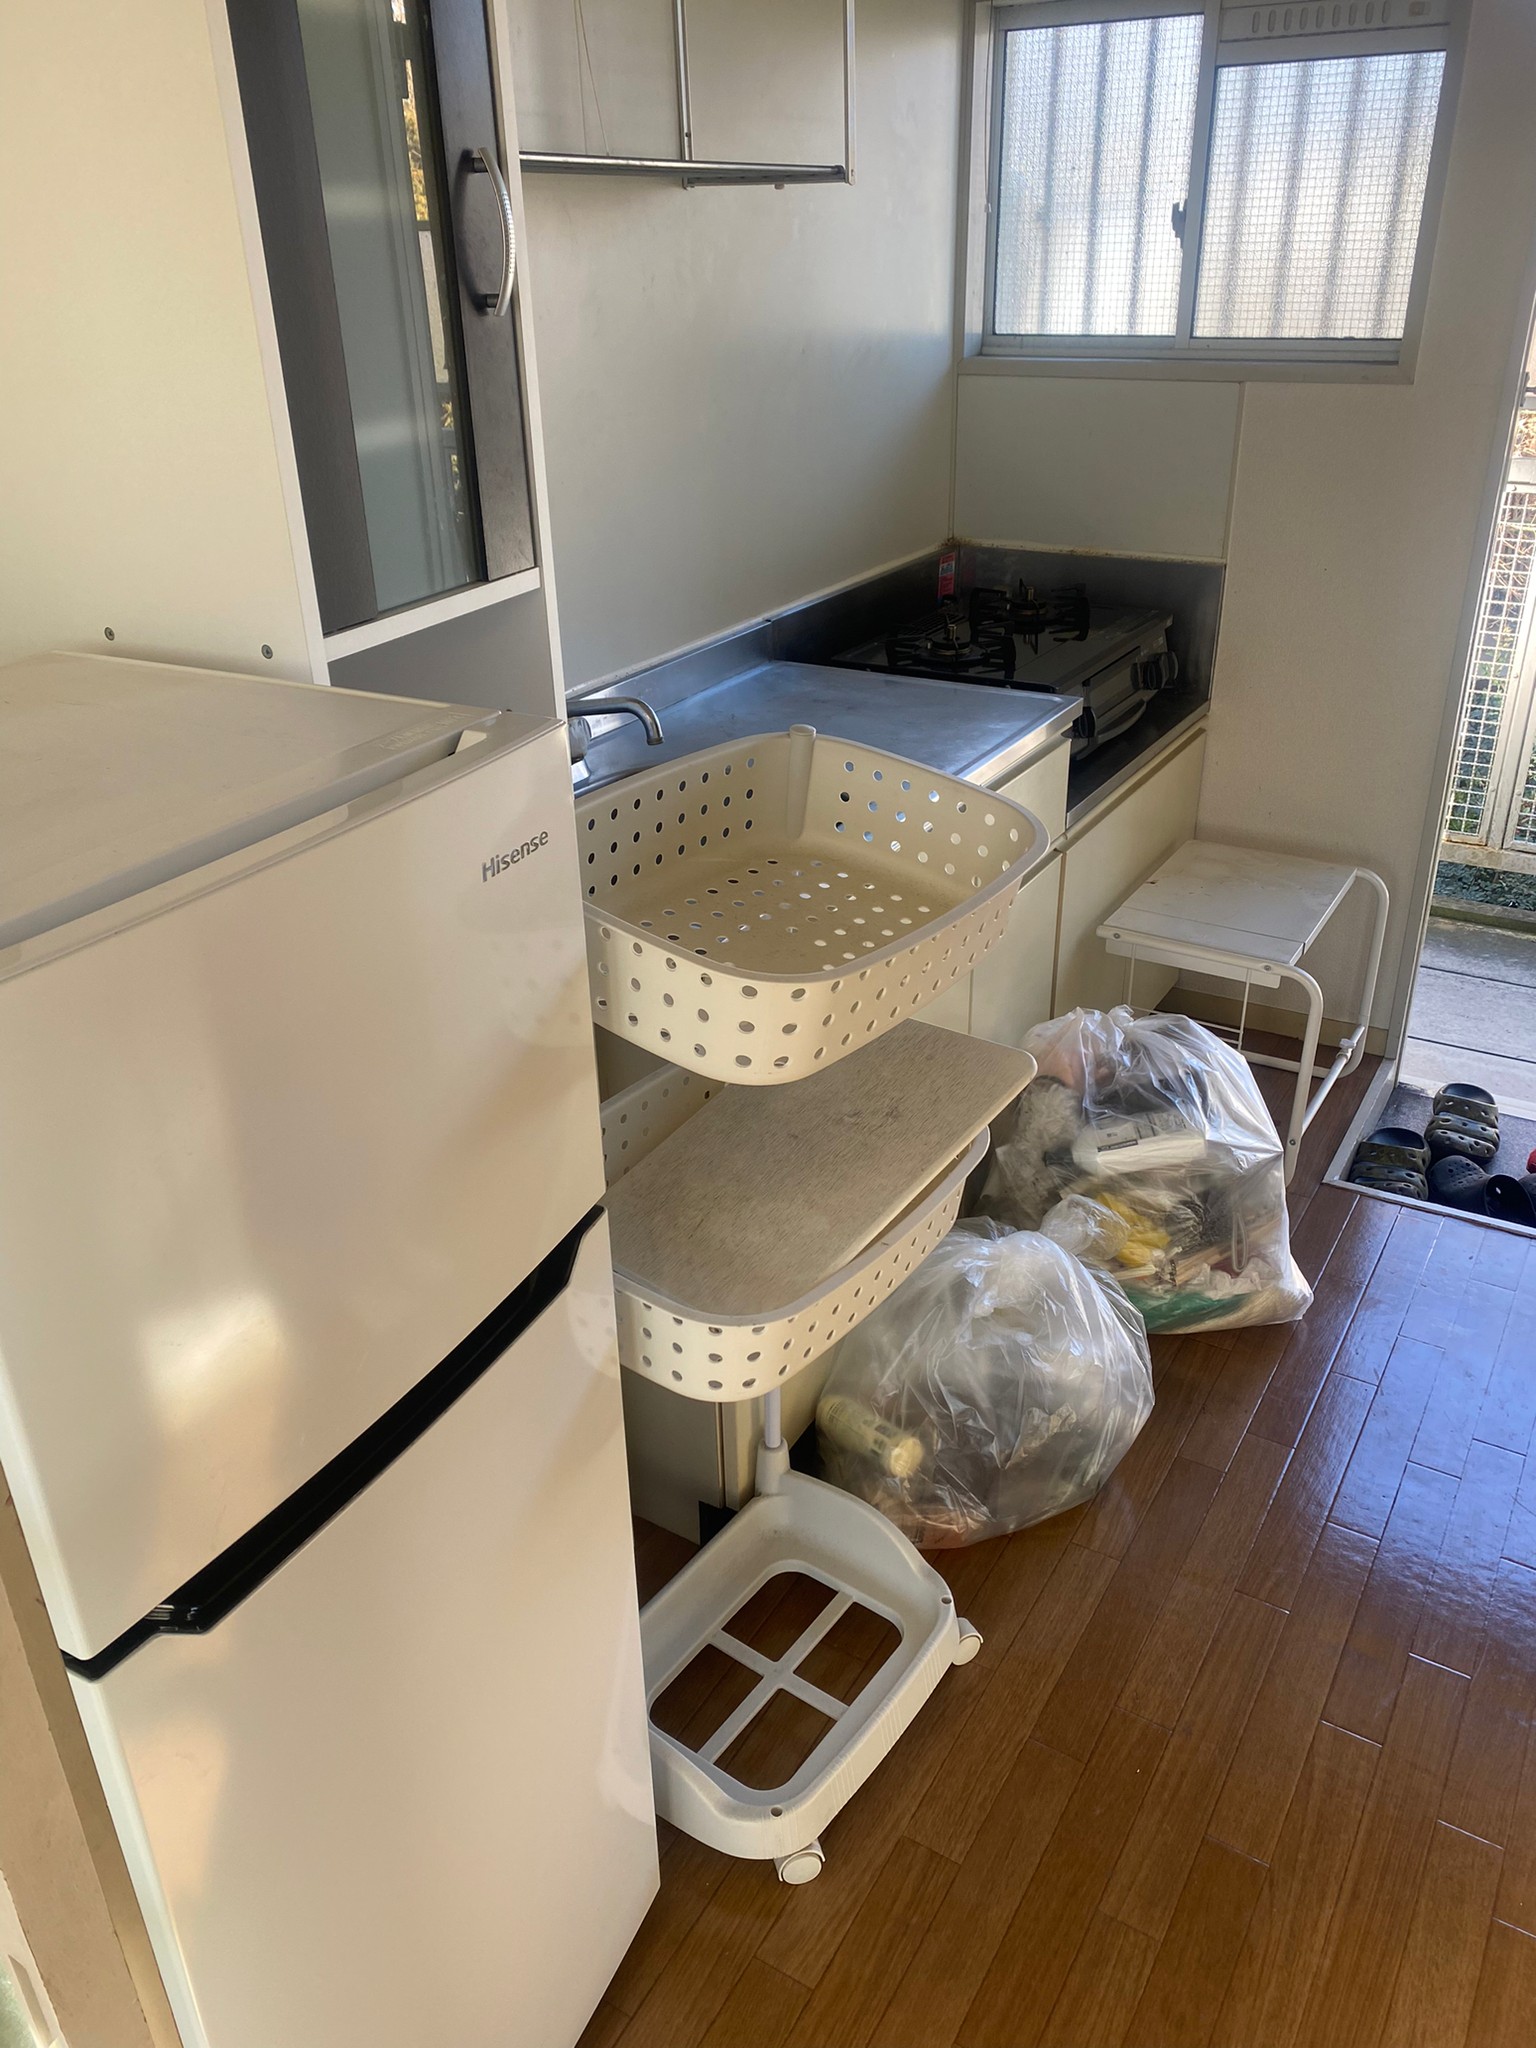 冷蔵庫、ラック、生活ゴミの回収前の状態